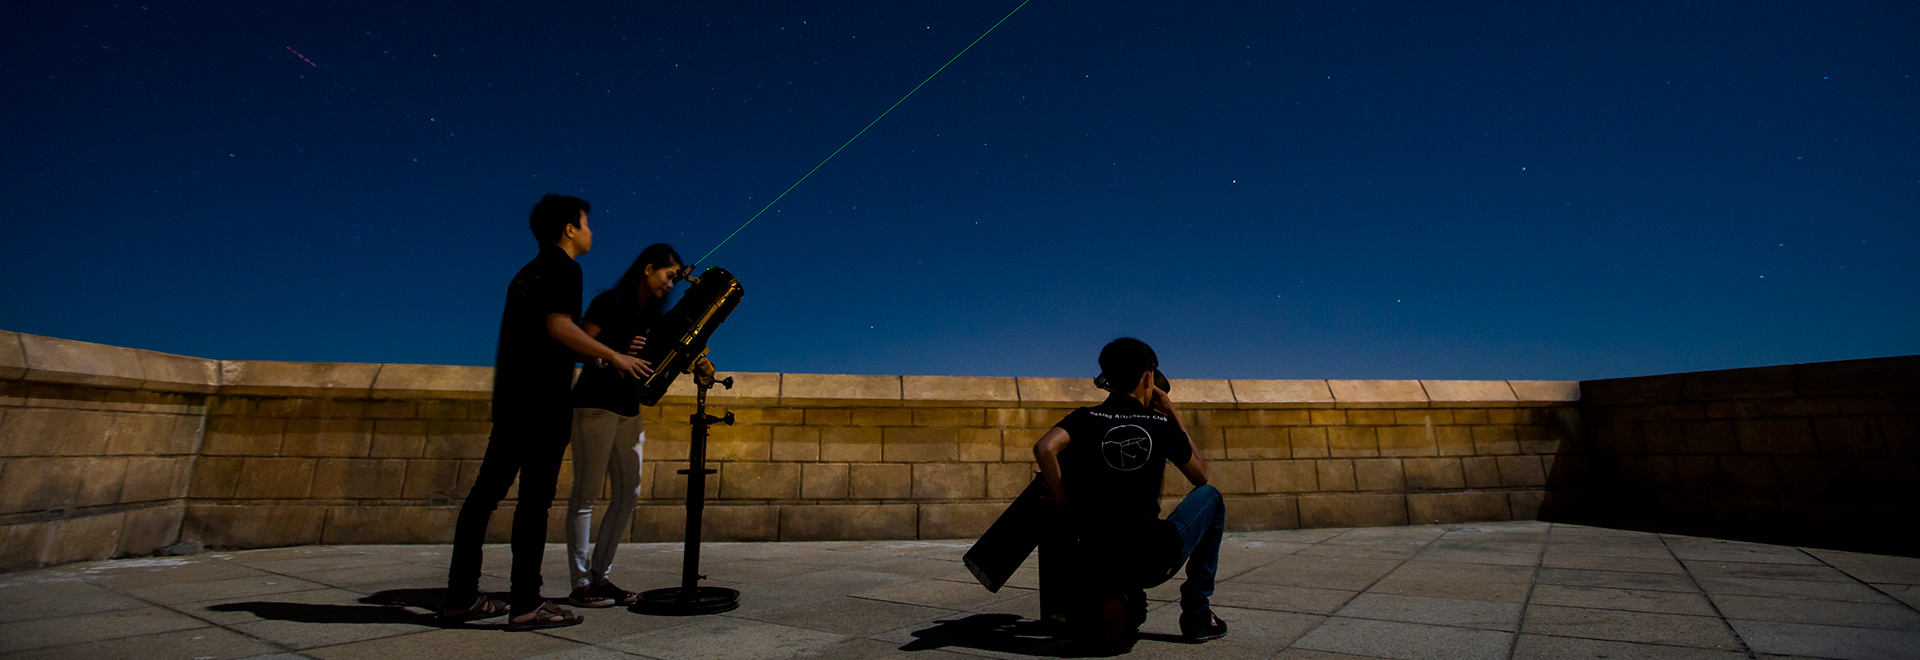 Trên đỉnh Bà Nà Hills, từ 7/6 tới đây du khách lần đầu tiên có cơ hội khám phá bầu trời đêm, thế giới các vì sao bằng kính thiên văn. Chương trình diễn ra vào các buổi tối 3,5,7, bắt đầu từ 19h30.